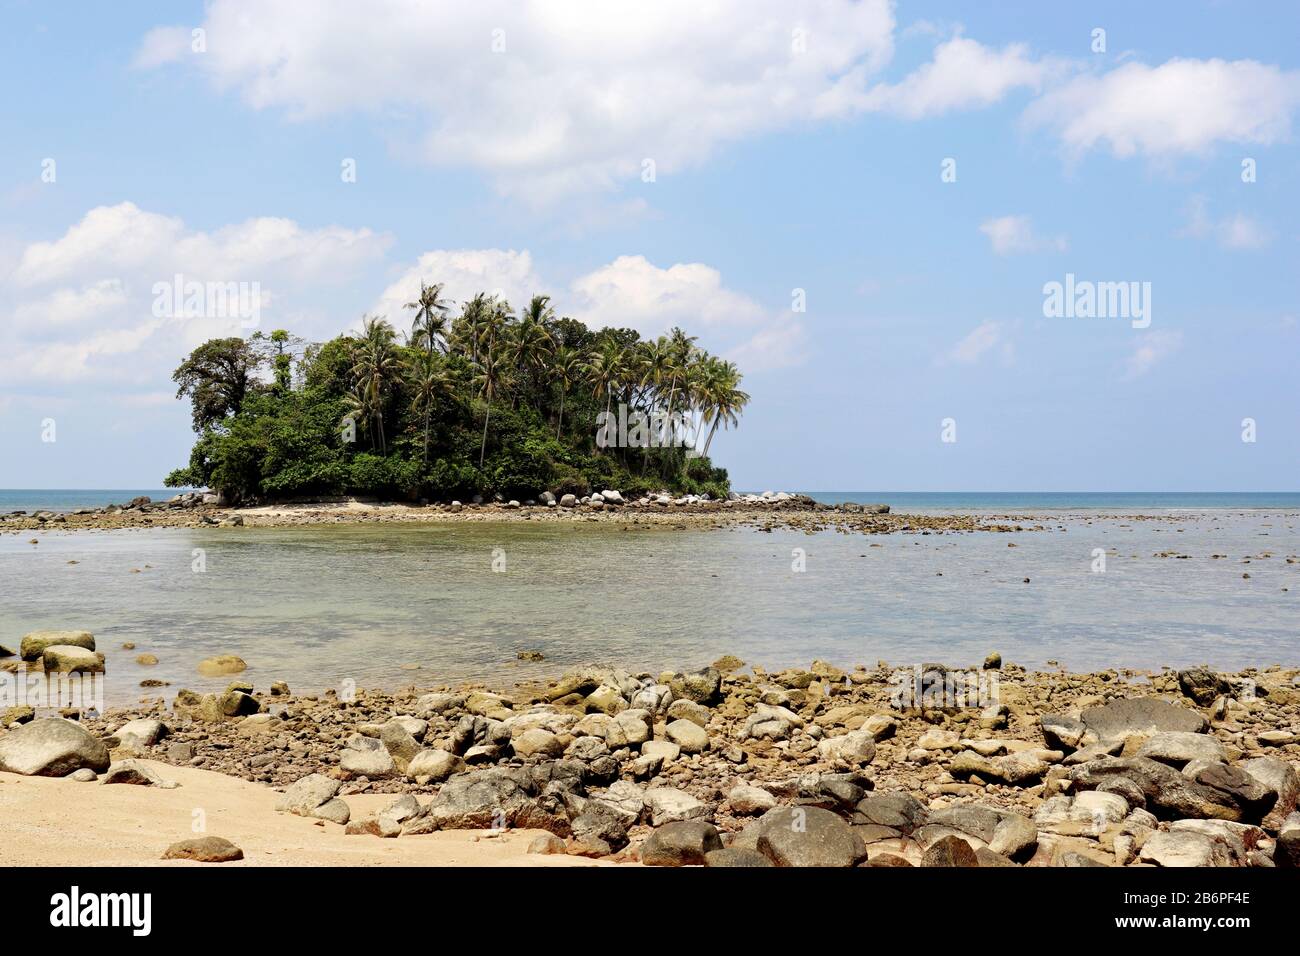 Isla tropical con palmeras de coco en el océano, vista pintoresca desde la playa con rocas. Colorido paisaje marino con cielo azul y nubes blancas Foto de stock